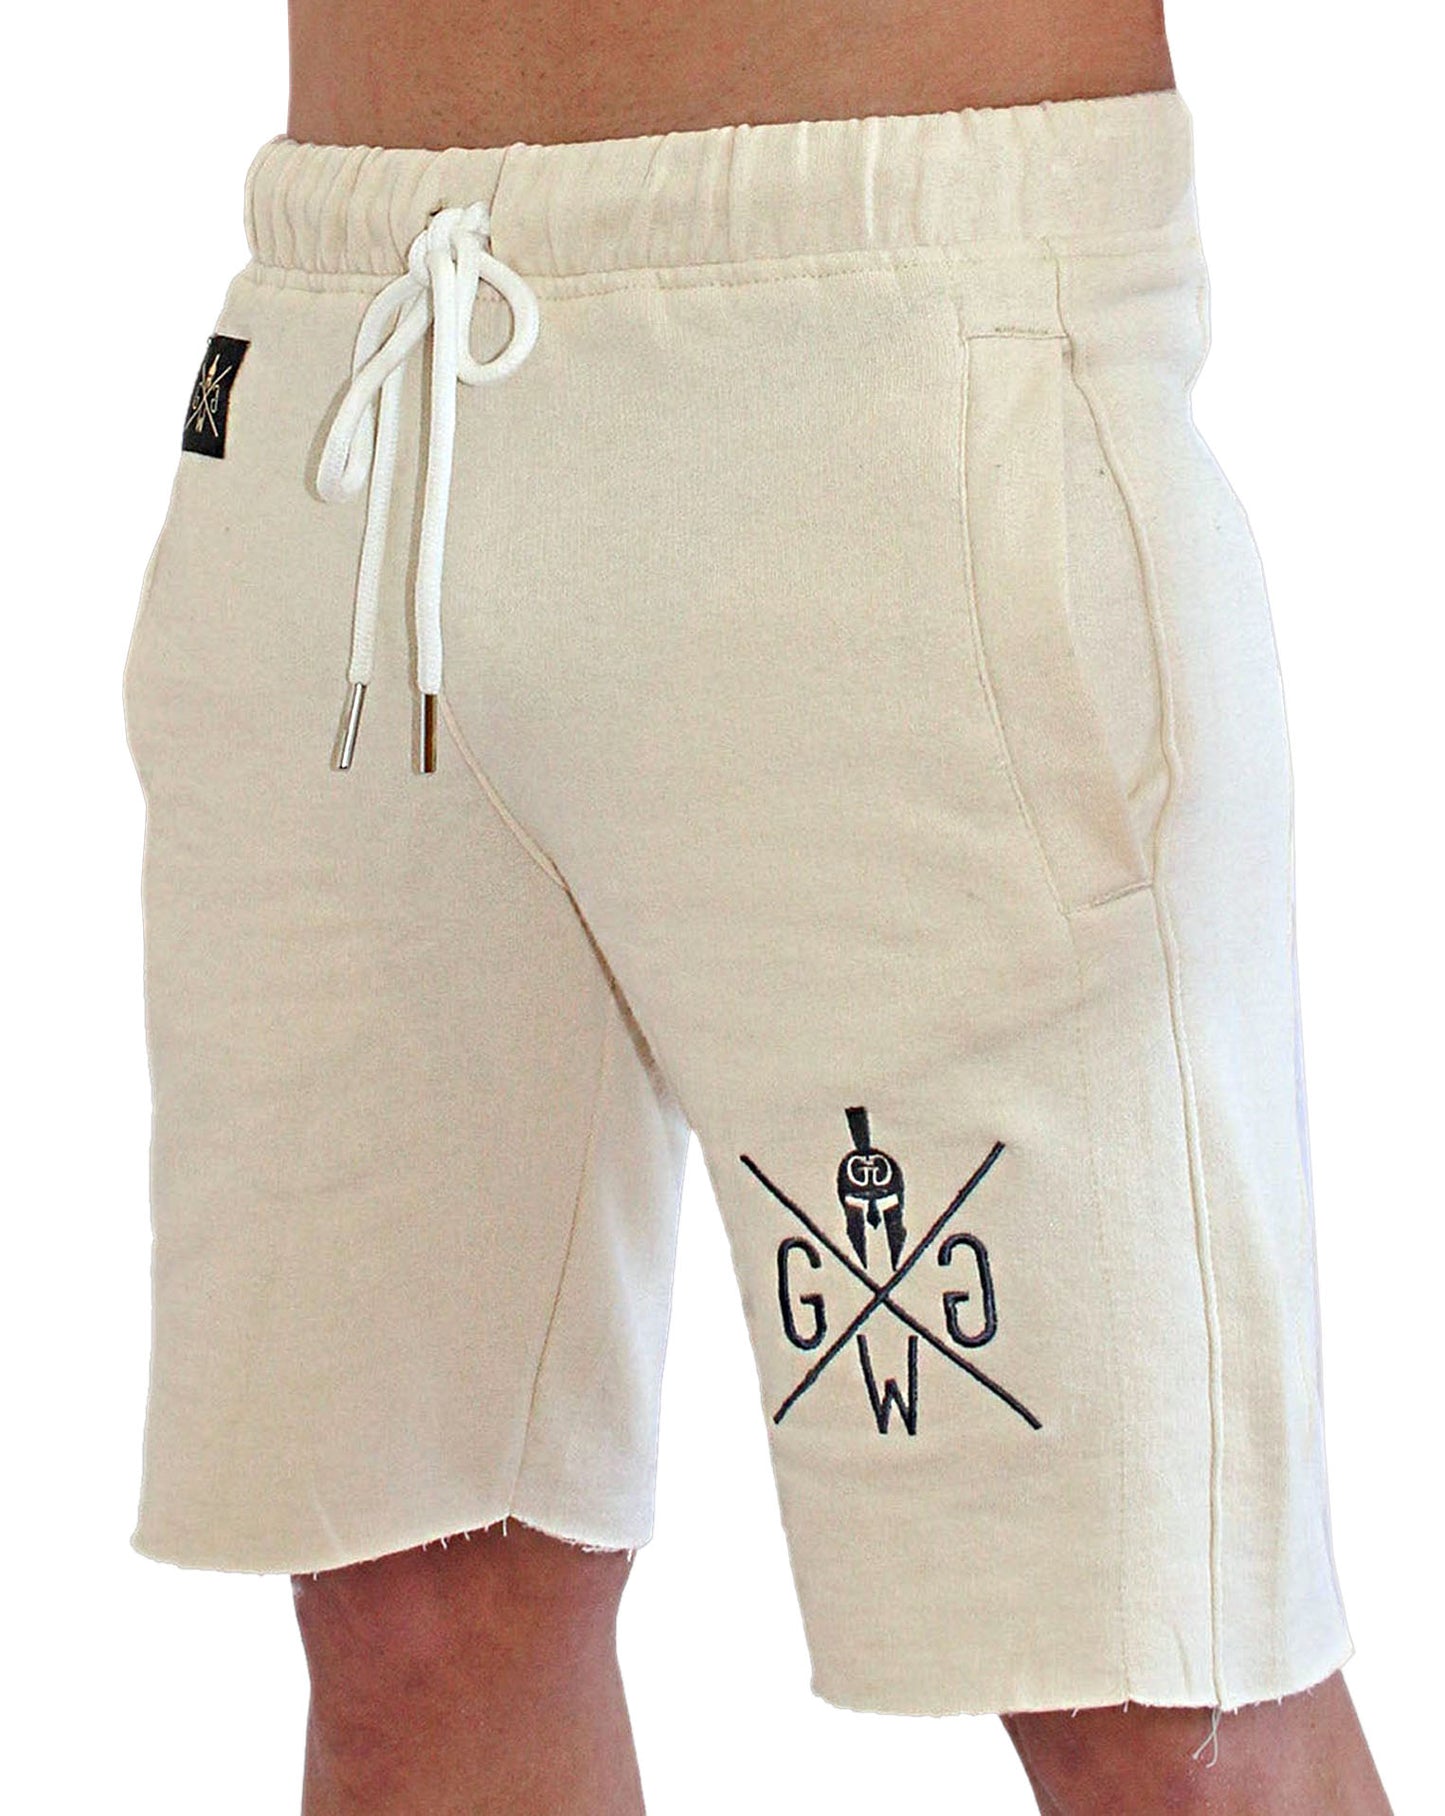 Stilvolle und komfortable Off White Sport Shorts für Herren von Gym Generation, mit praktischen Seitentaschen und Logo-Stick in Anthrazit.